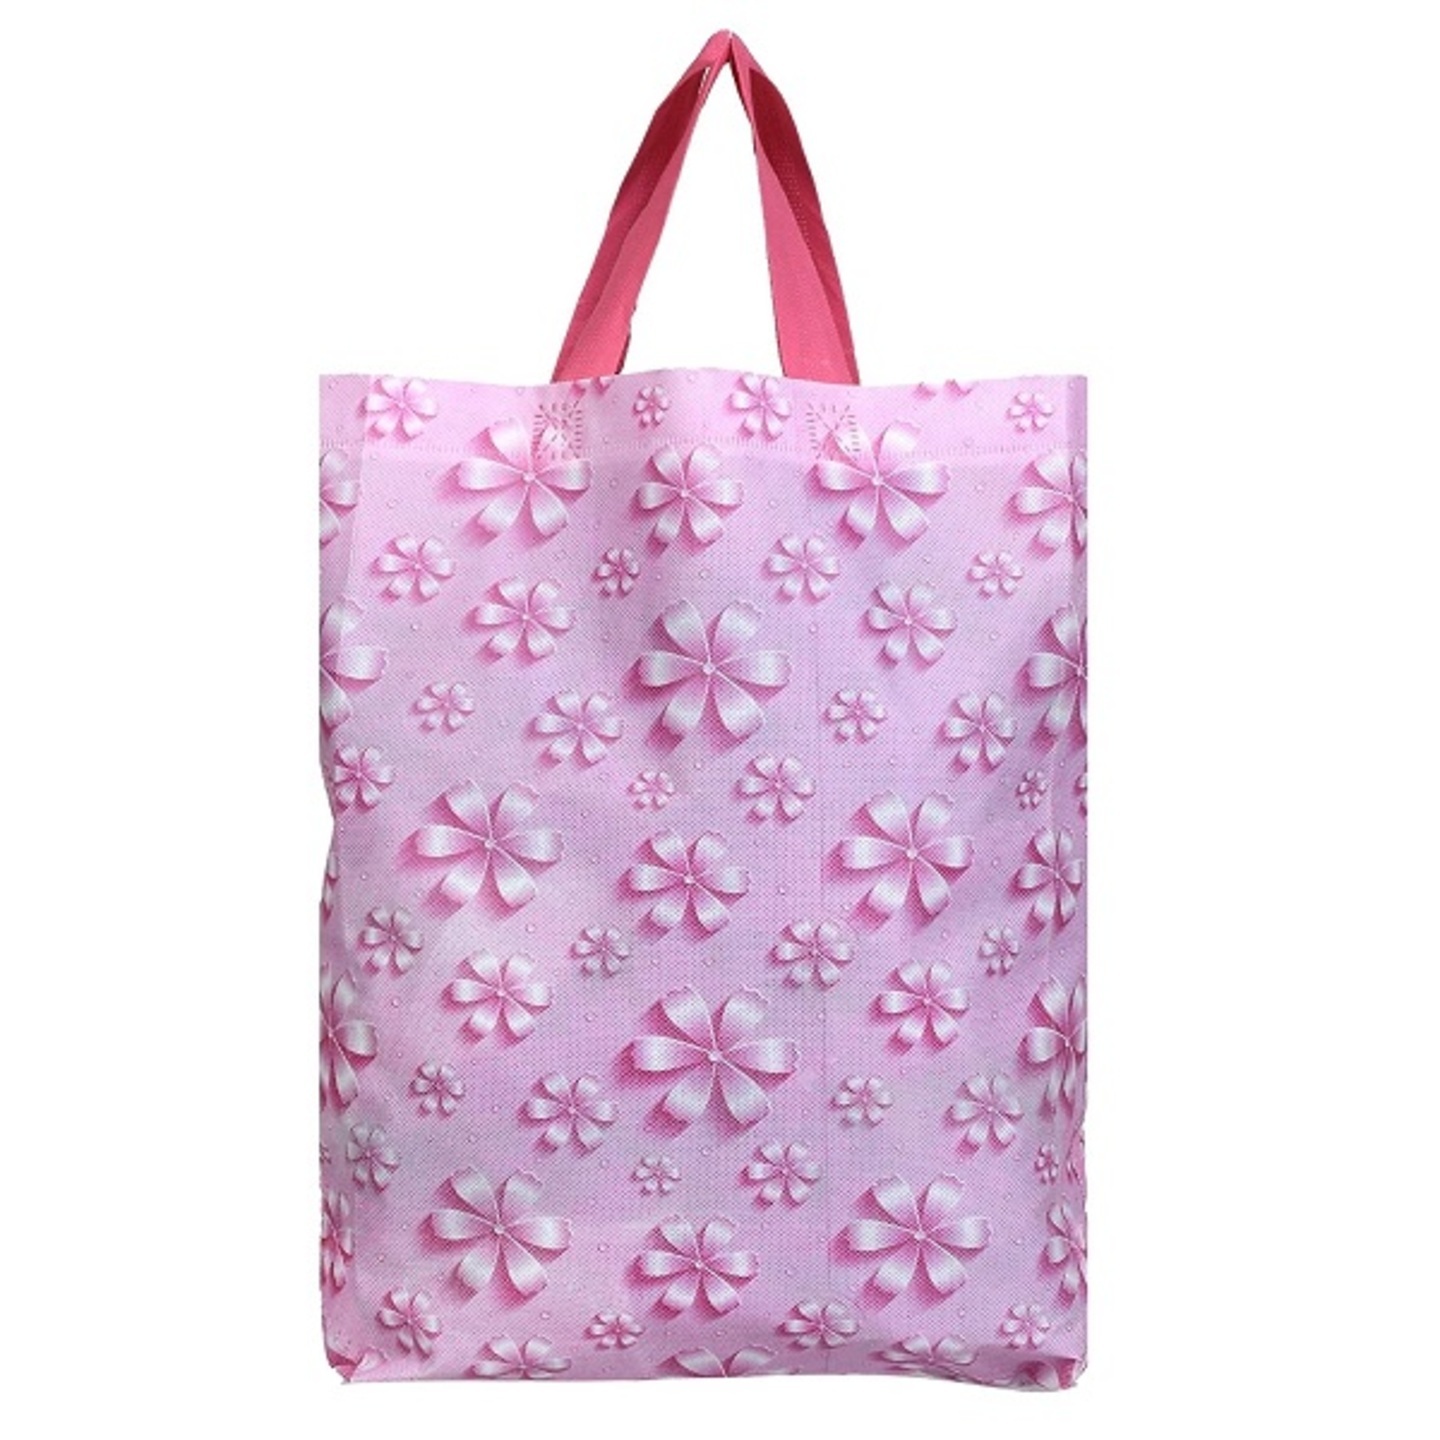 Non-Woven Foldable Shopping Bag  Travel Tote Bag  Gift Bag